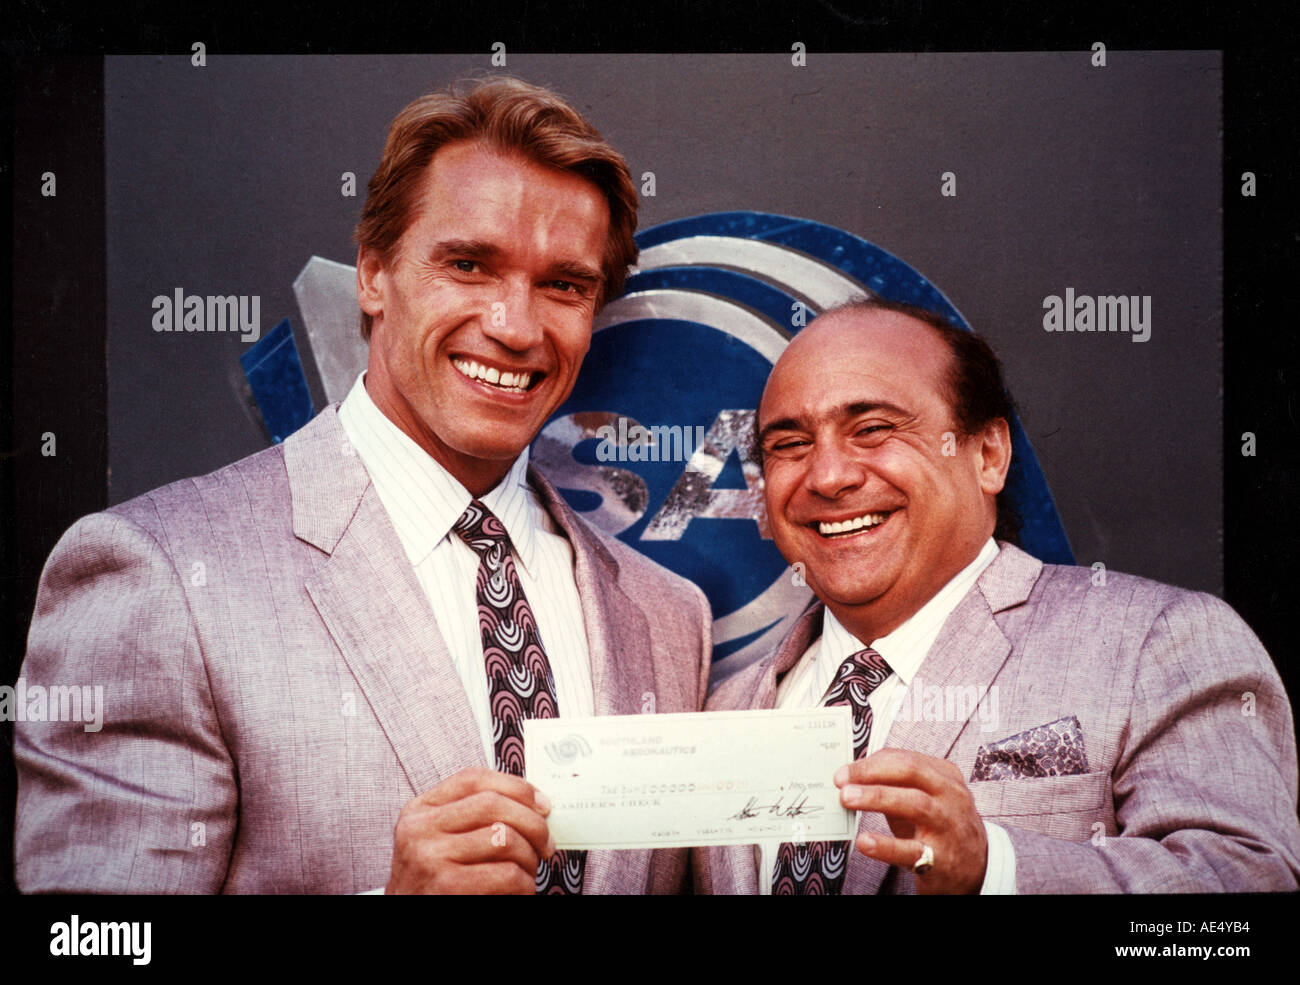 TWINS Arnold Schwarzenegger and Danny DeVito in the 1988 film Stock Photo